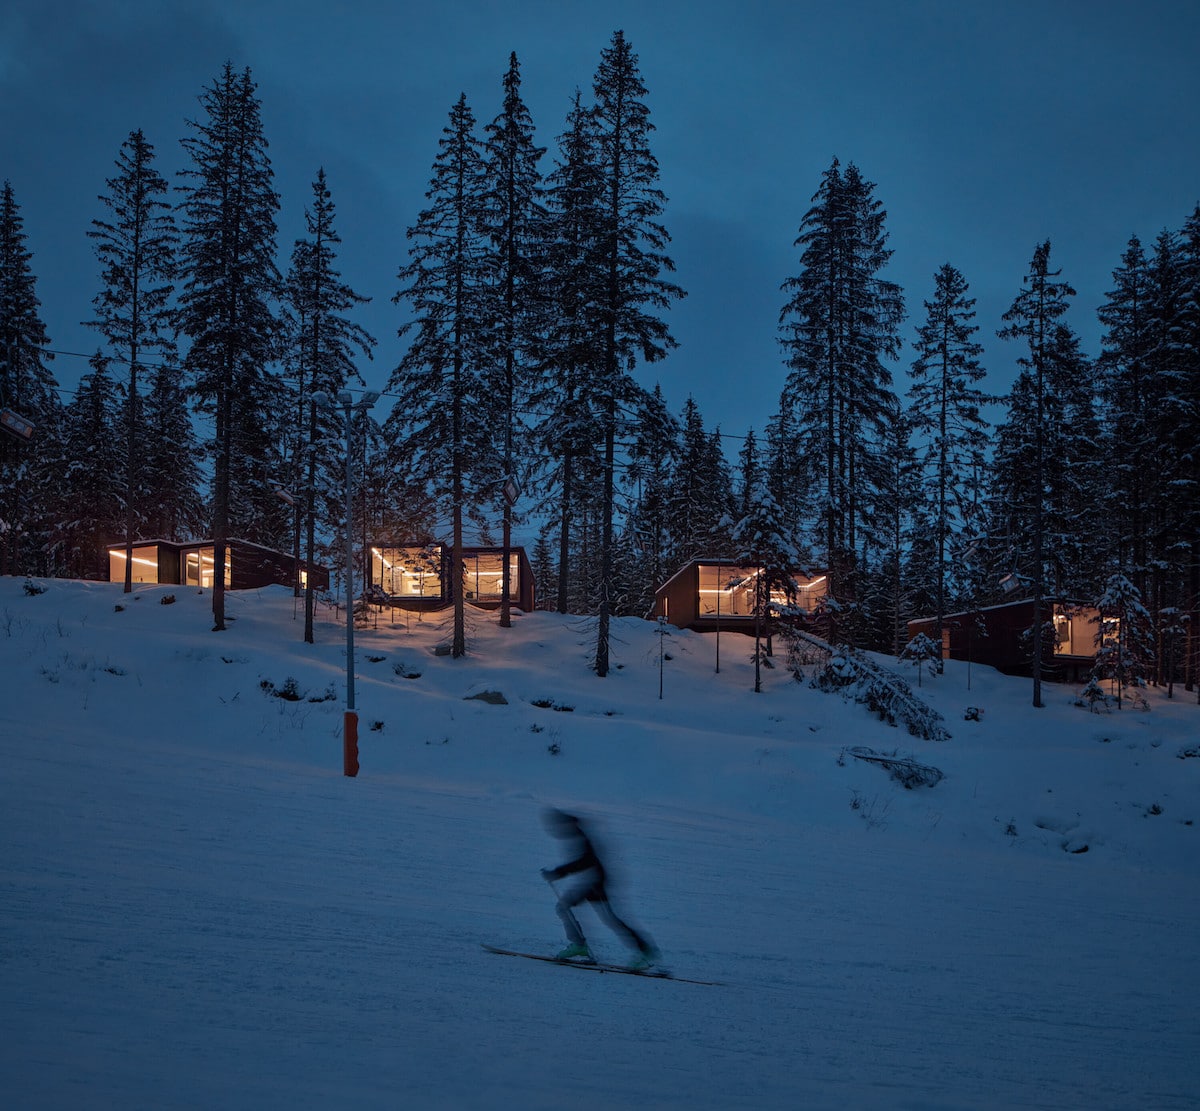 Tree Houses of Hotel Björnson by Ark-Shelter